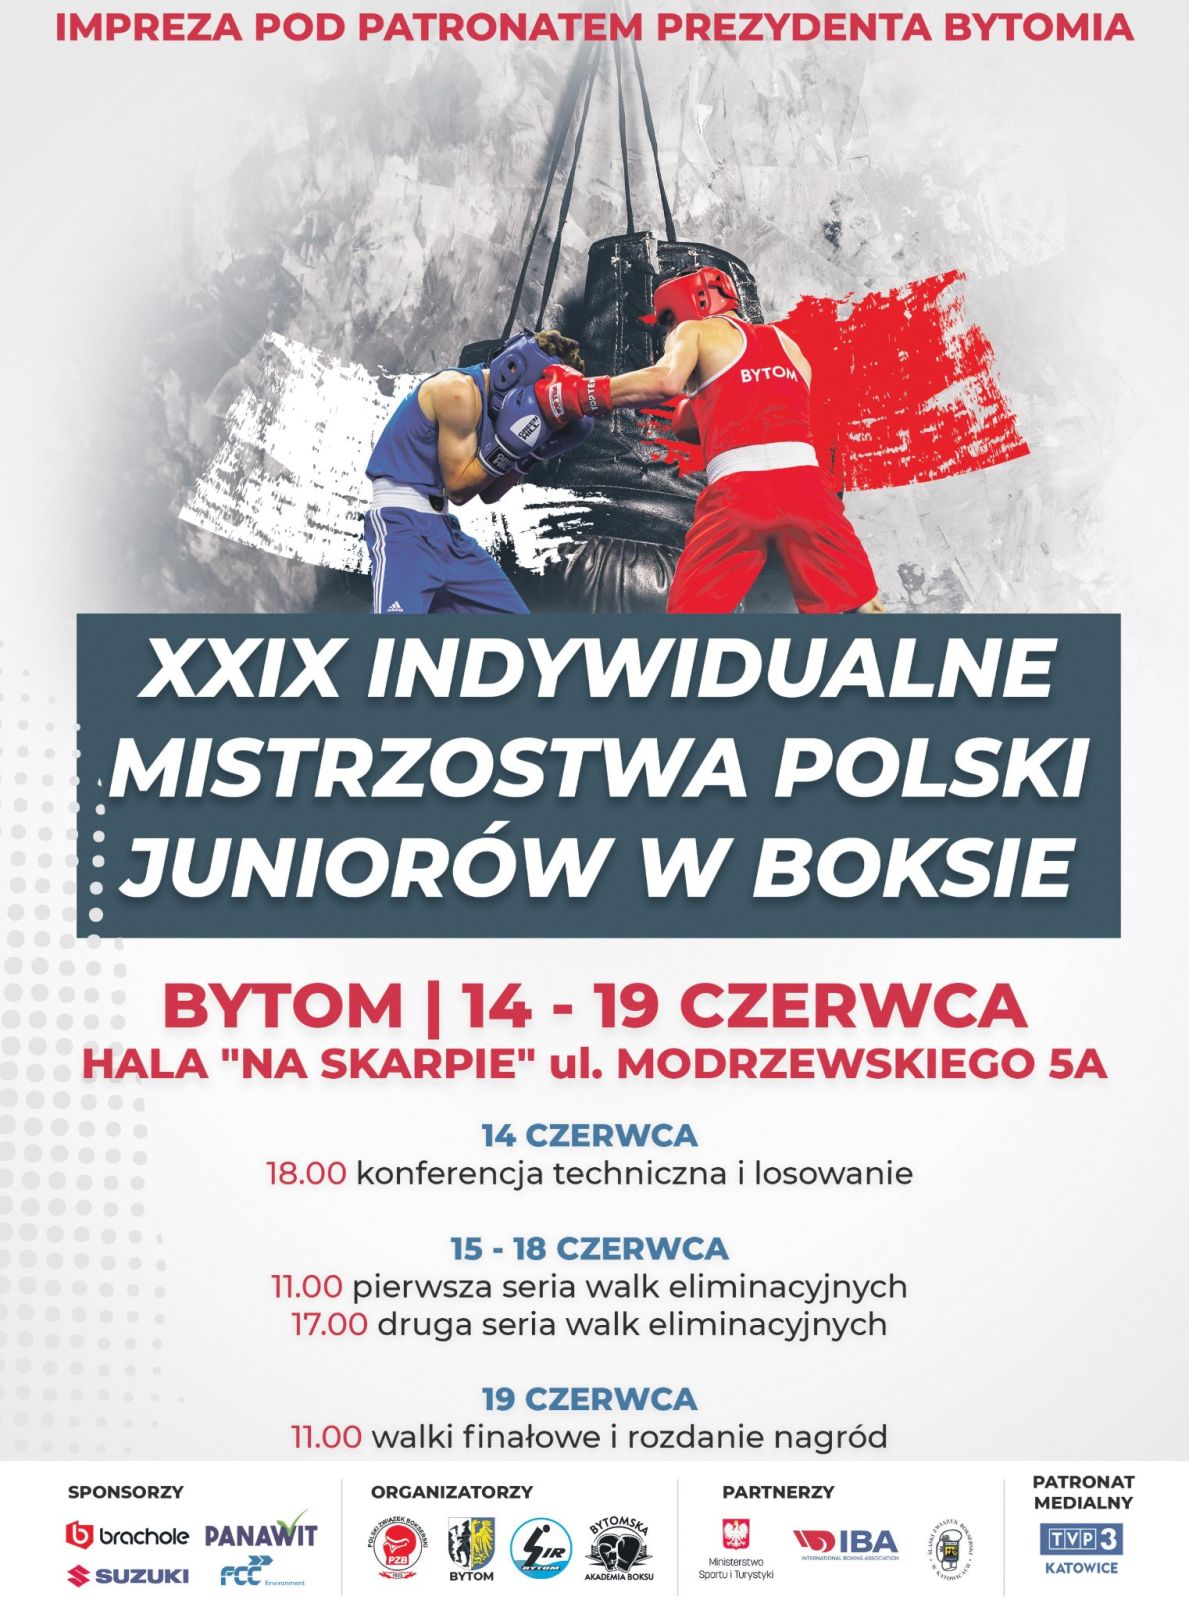 Wielkie bokserskie święto w Bytomiu. Zapraszamy na Mistrzostwa Polski Juniorów w boksie